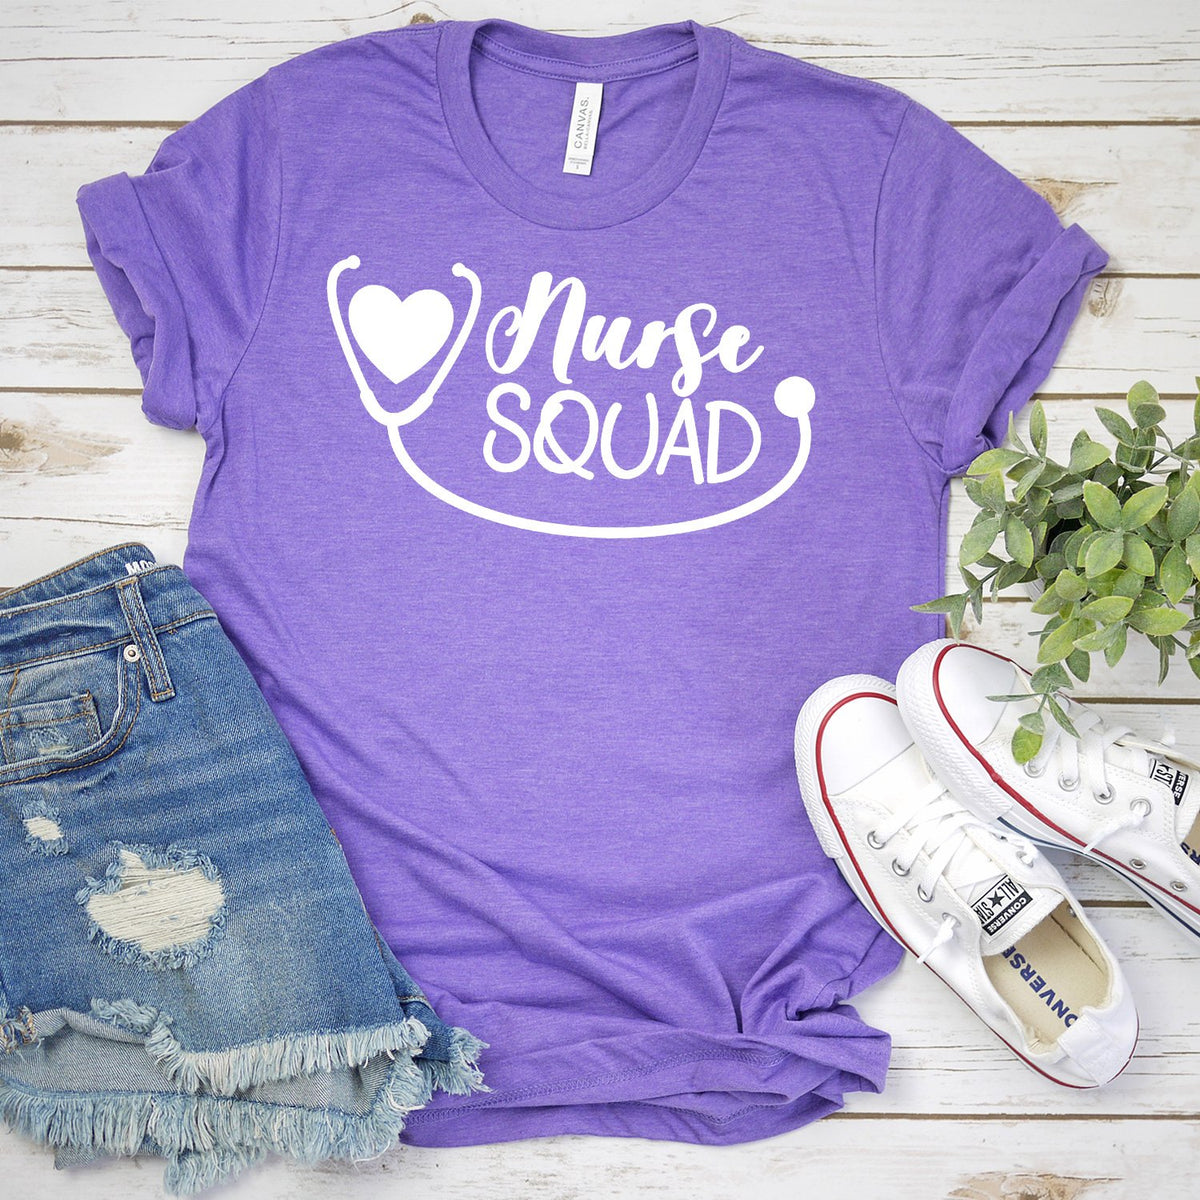 Nurse Squad with Stethoscope - Short Sleeve Tee Shirt